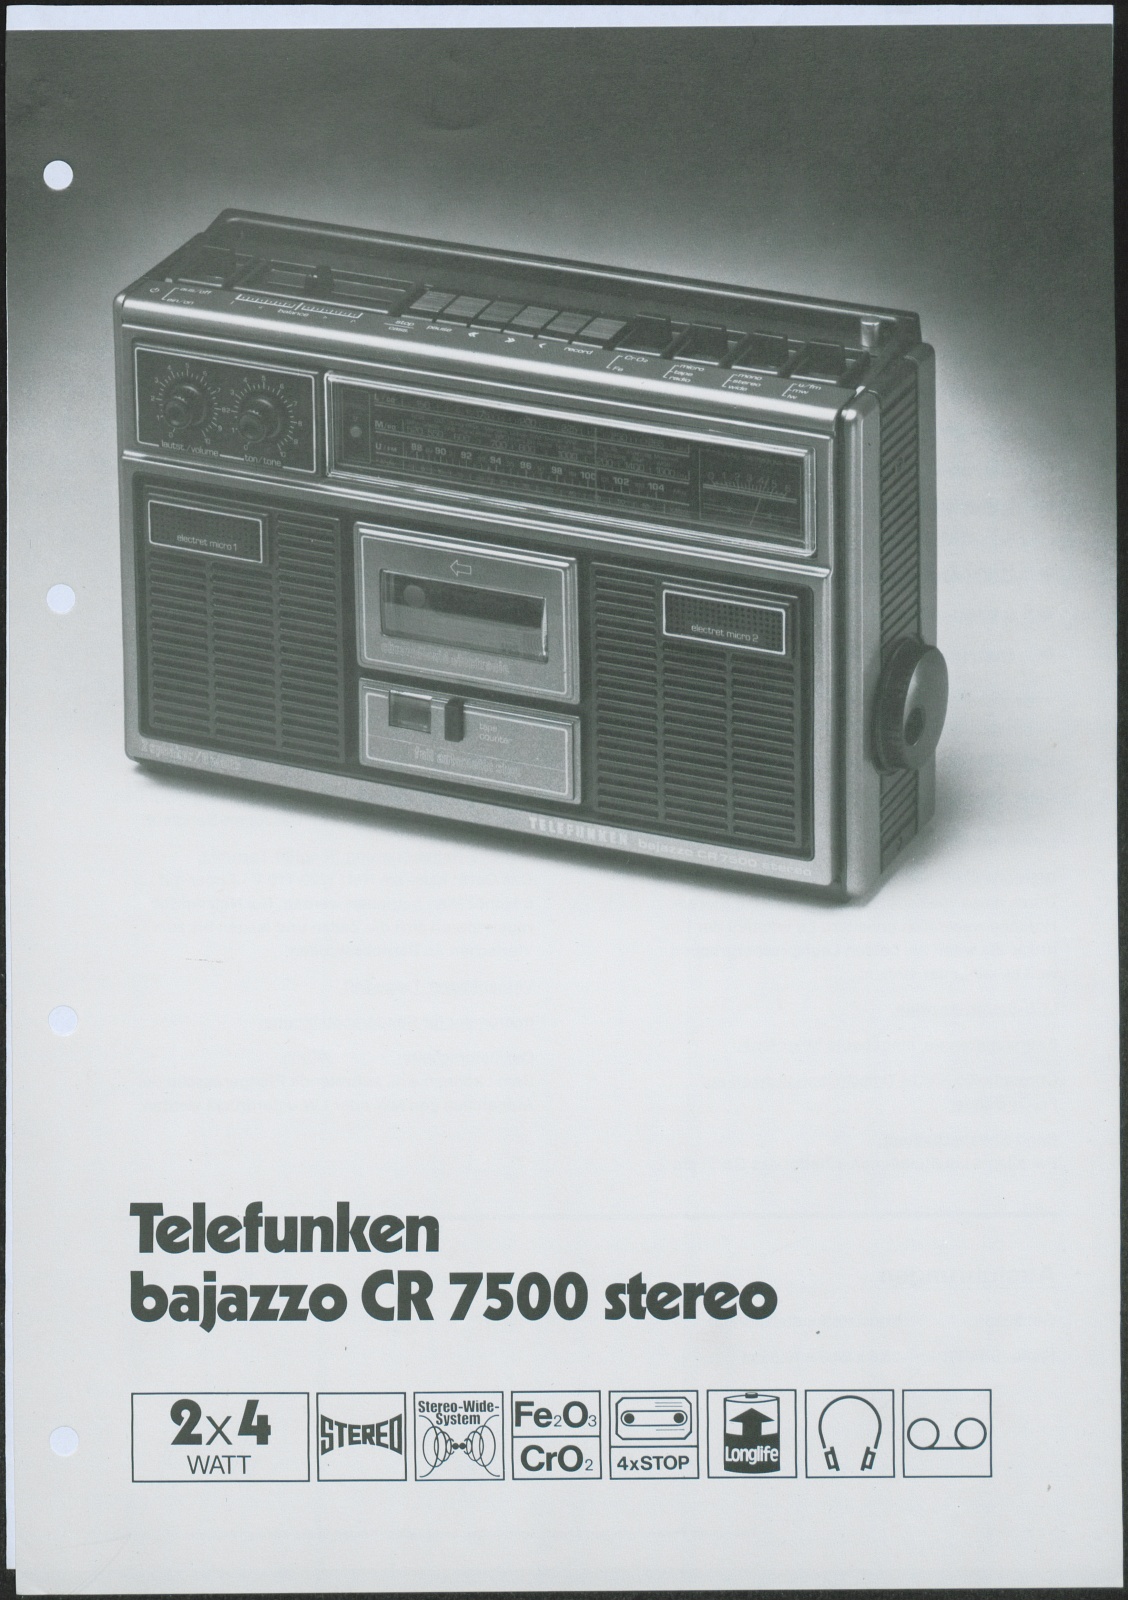 Werbeblatt: Werbeblatt für das Telefunken bajazzo CR 7500 stereo (Stiftung Deutsches Technikmuseum Berlin CC0)